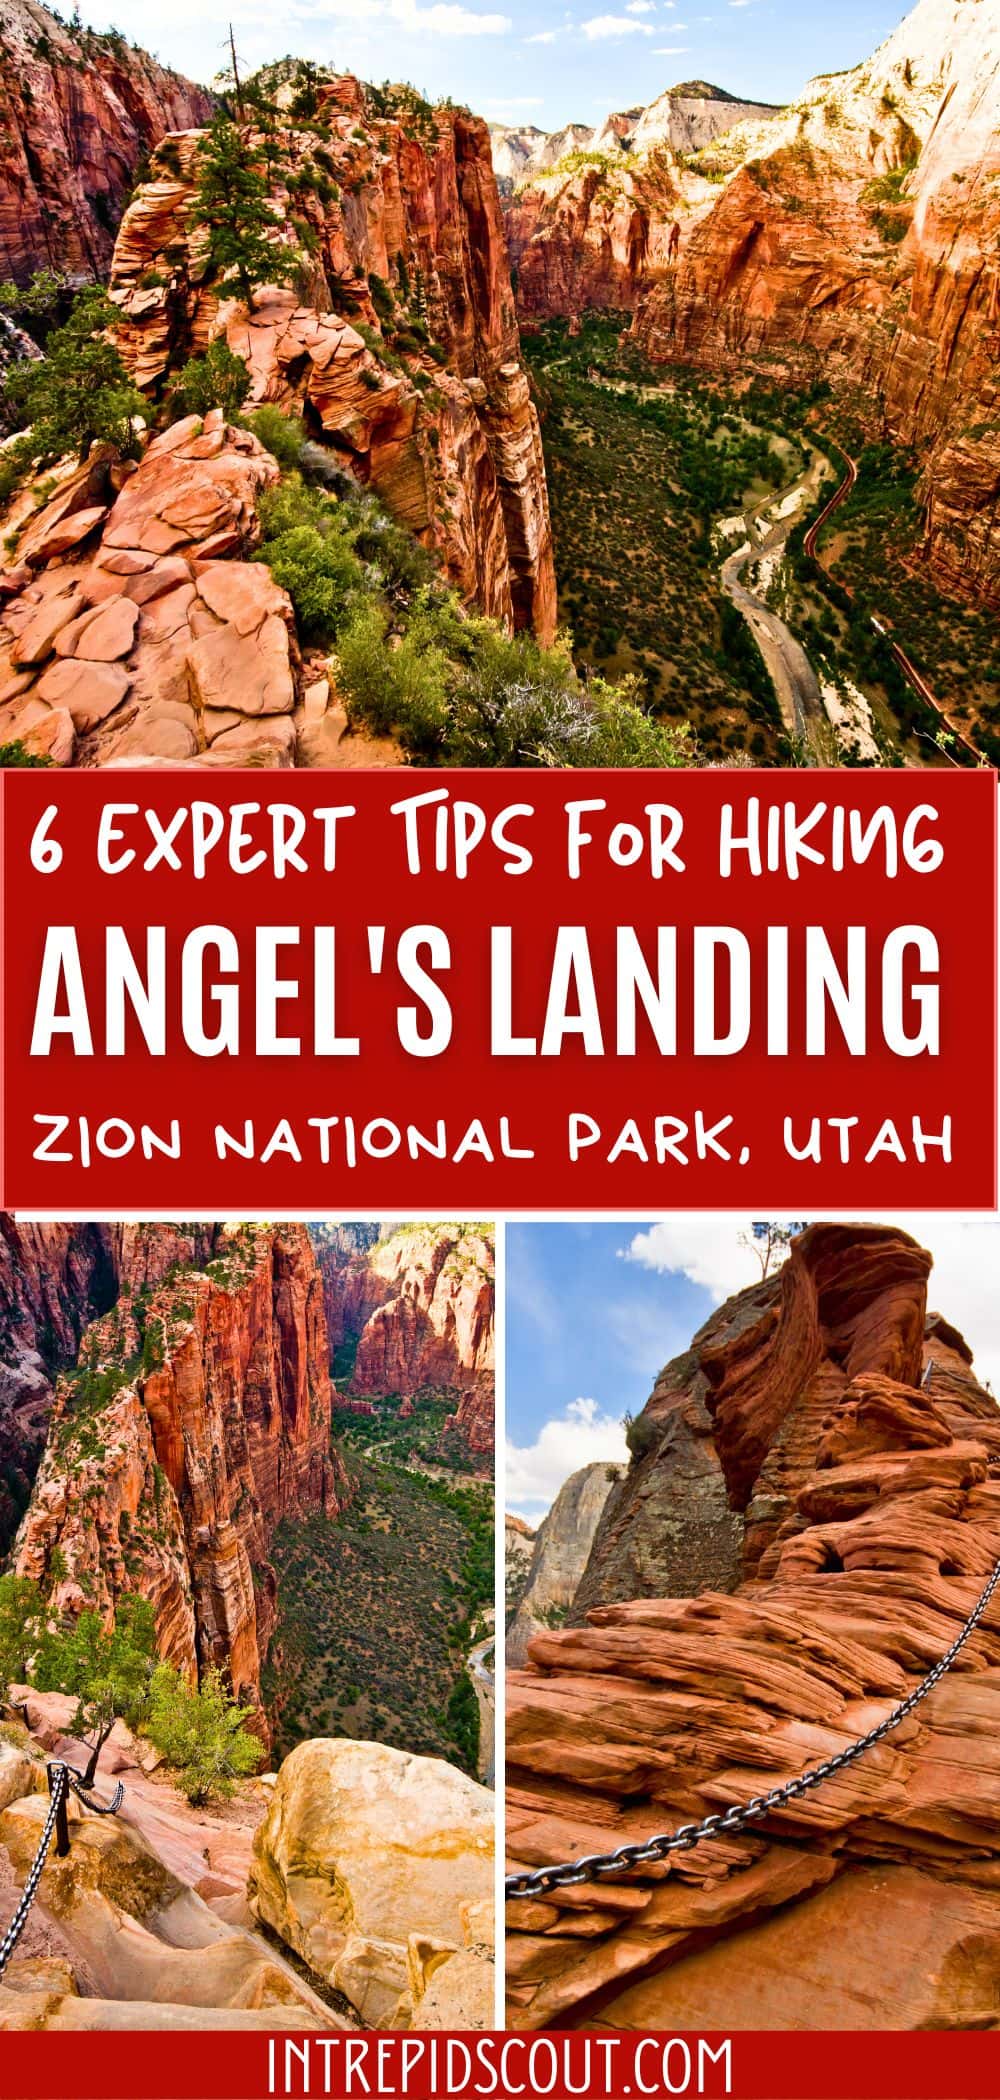 Tips for Angel's Landing Hike